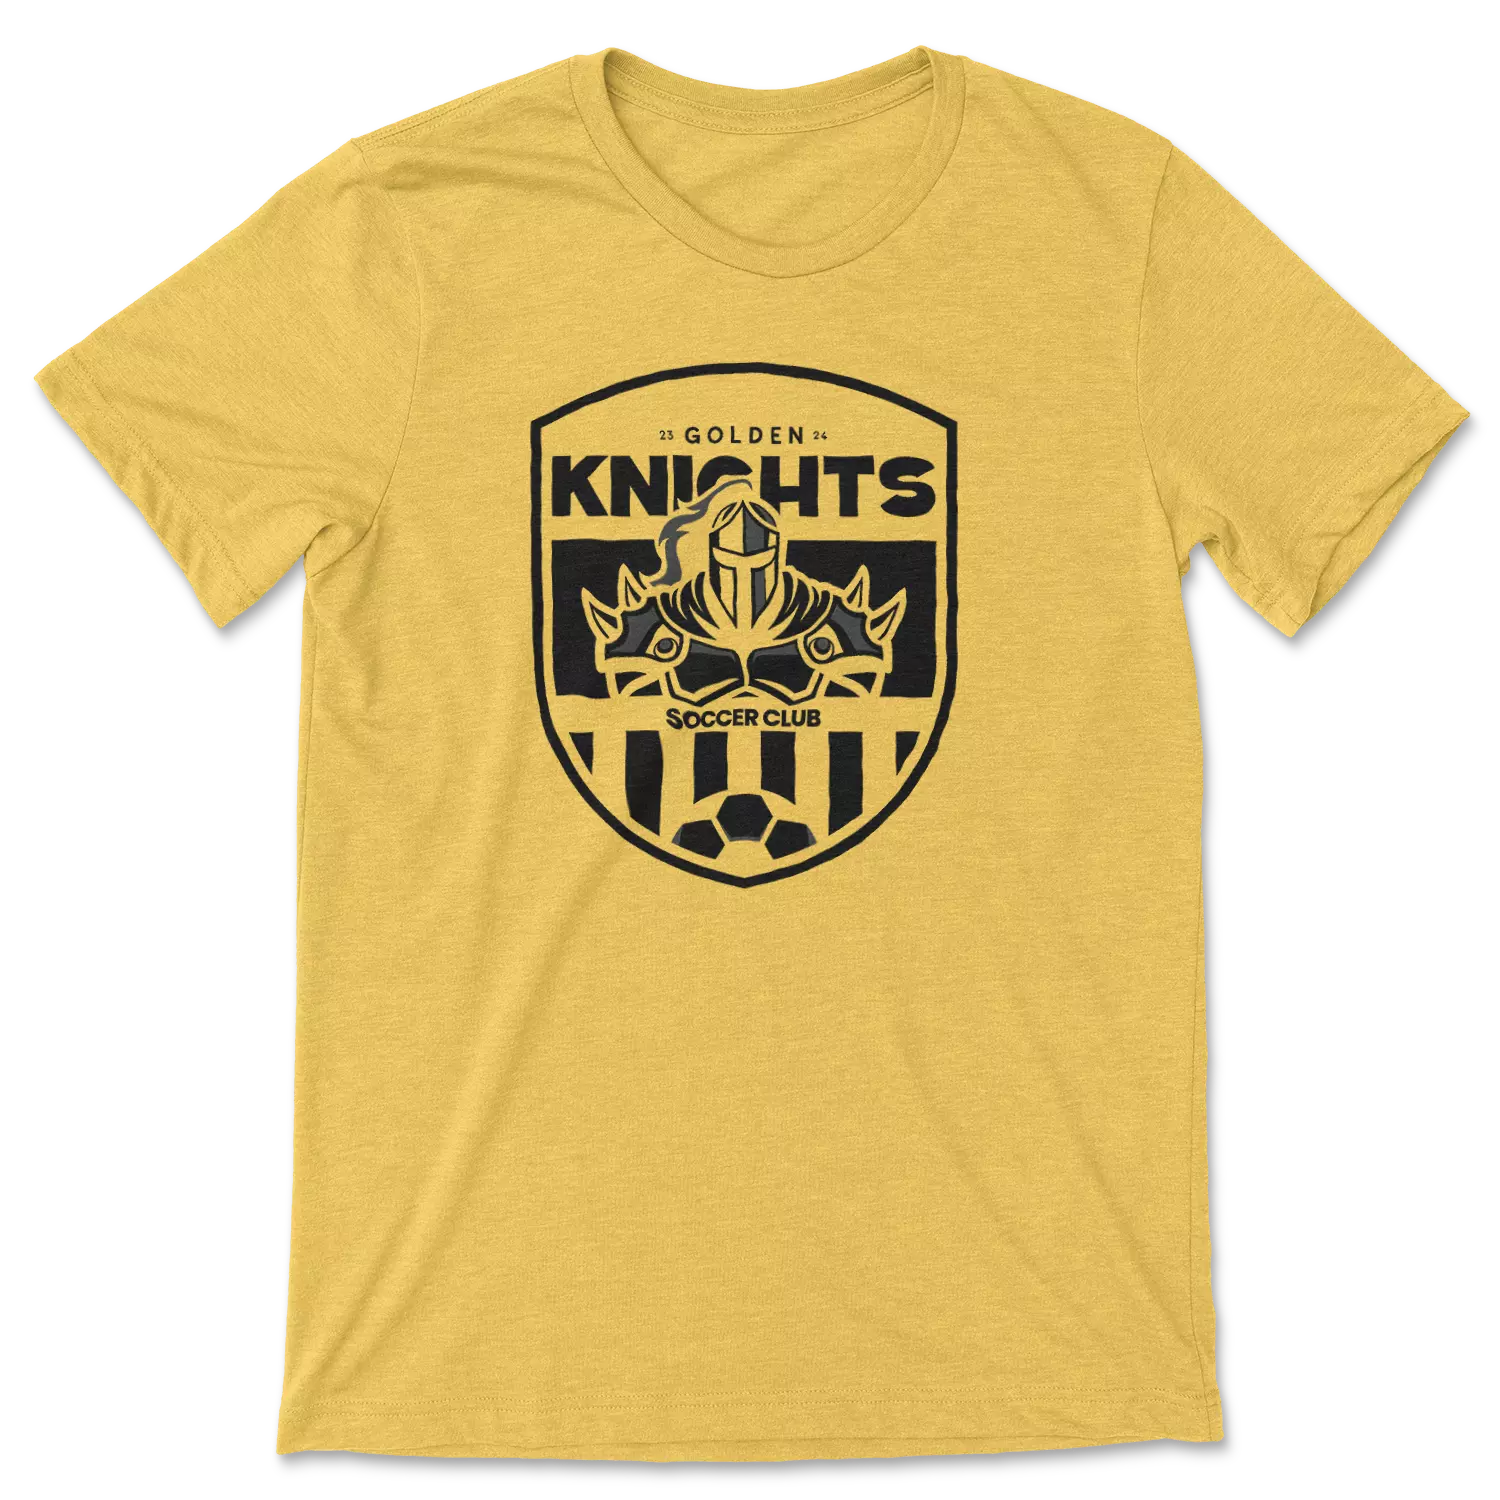 Golden Knights - Yellow Shirt